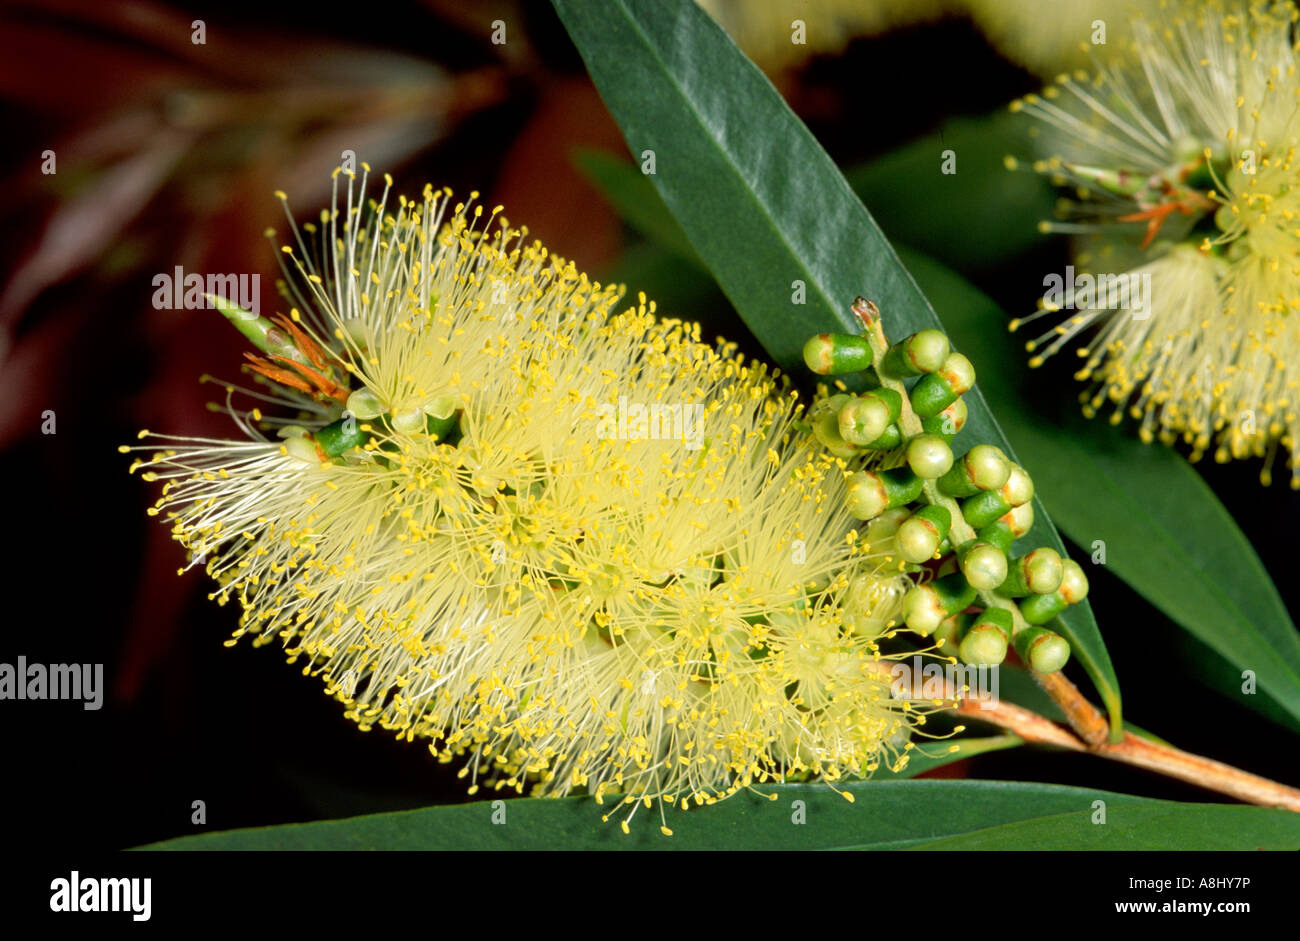 Yellow bottlebrush flowers, Australia Stock Photo